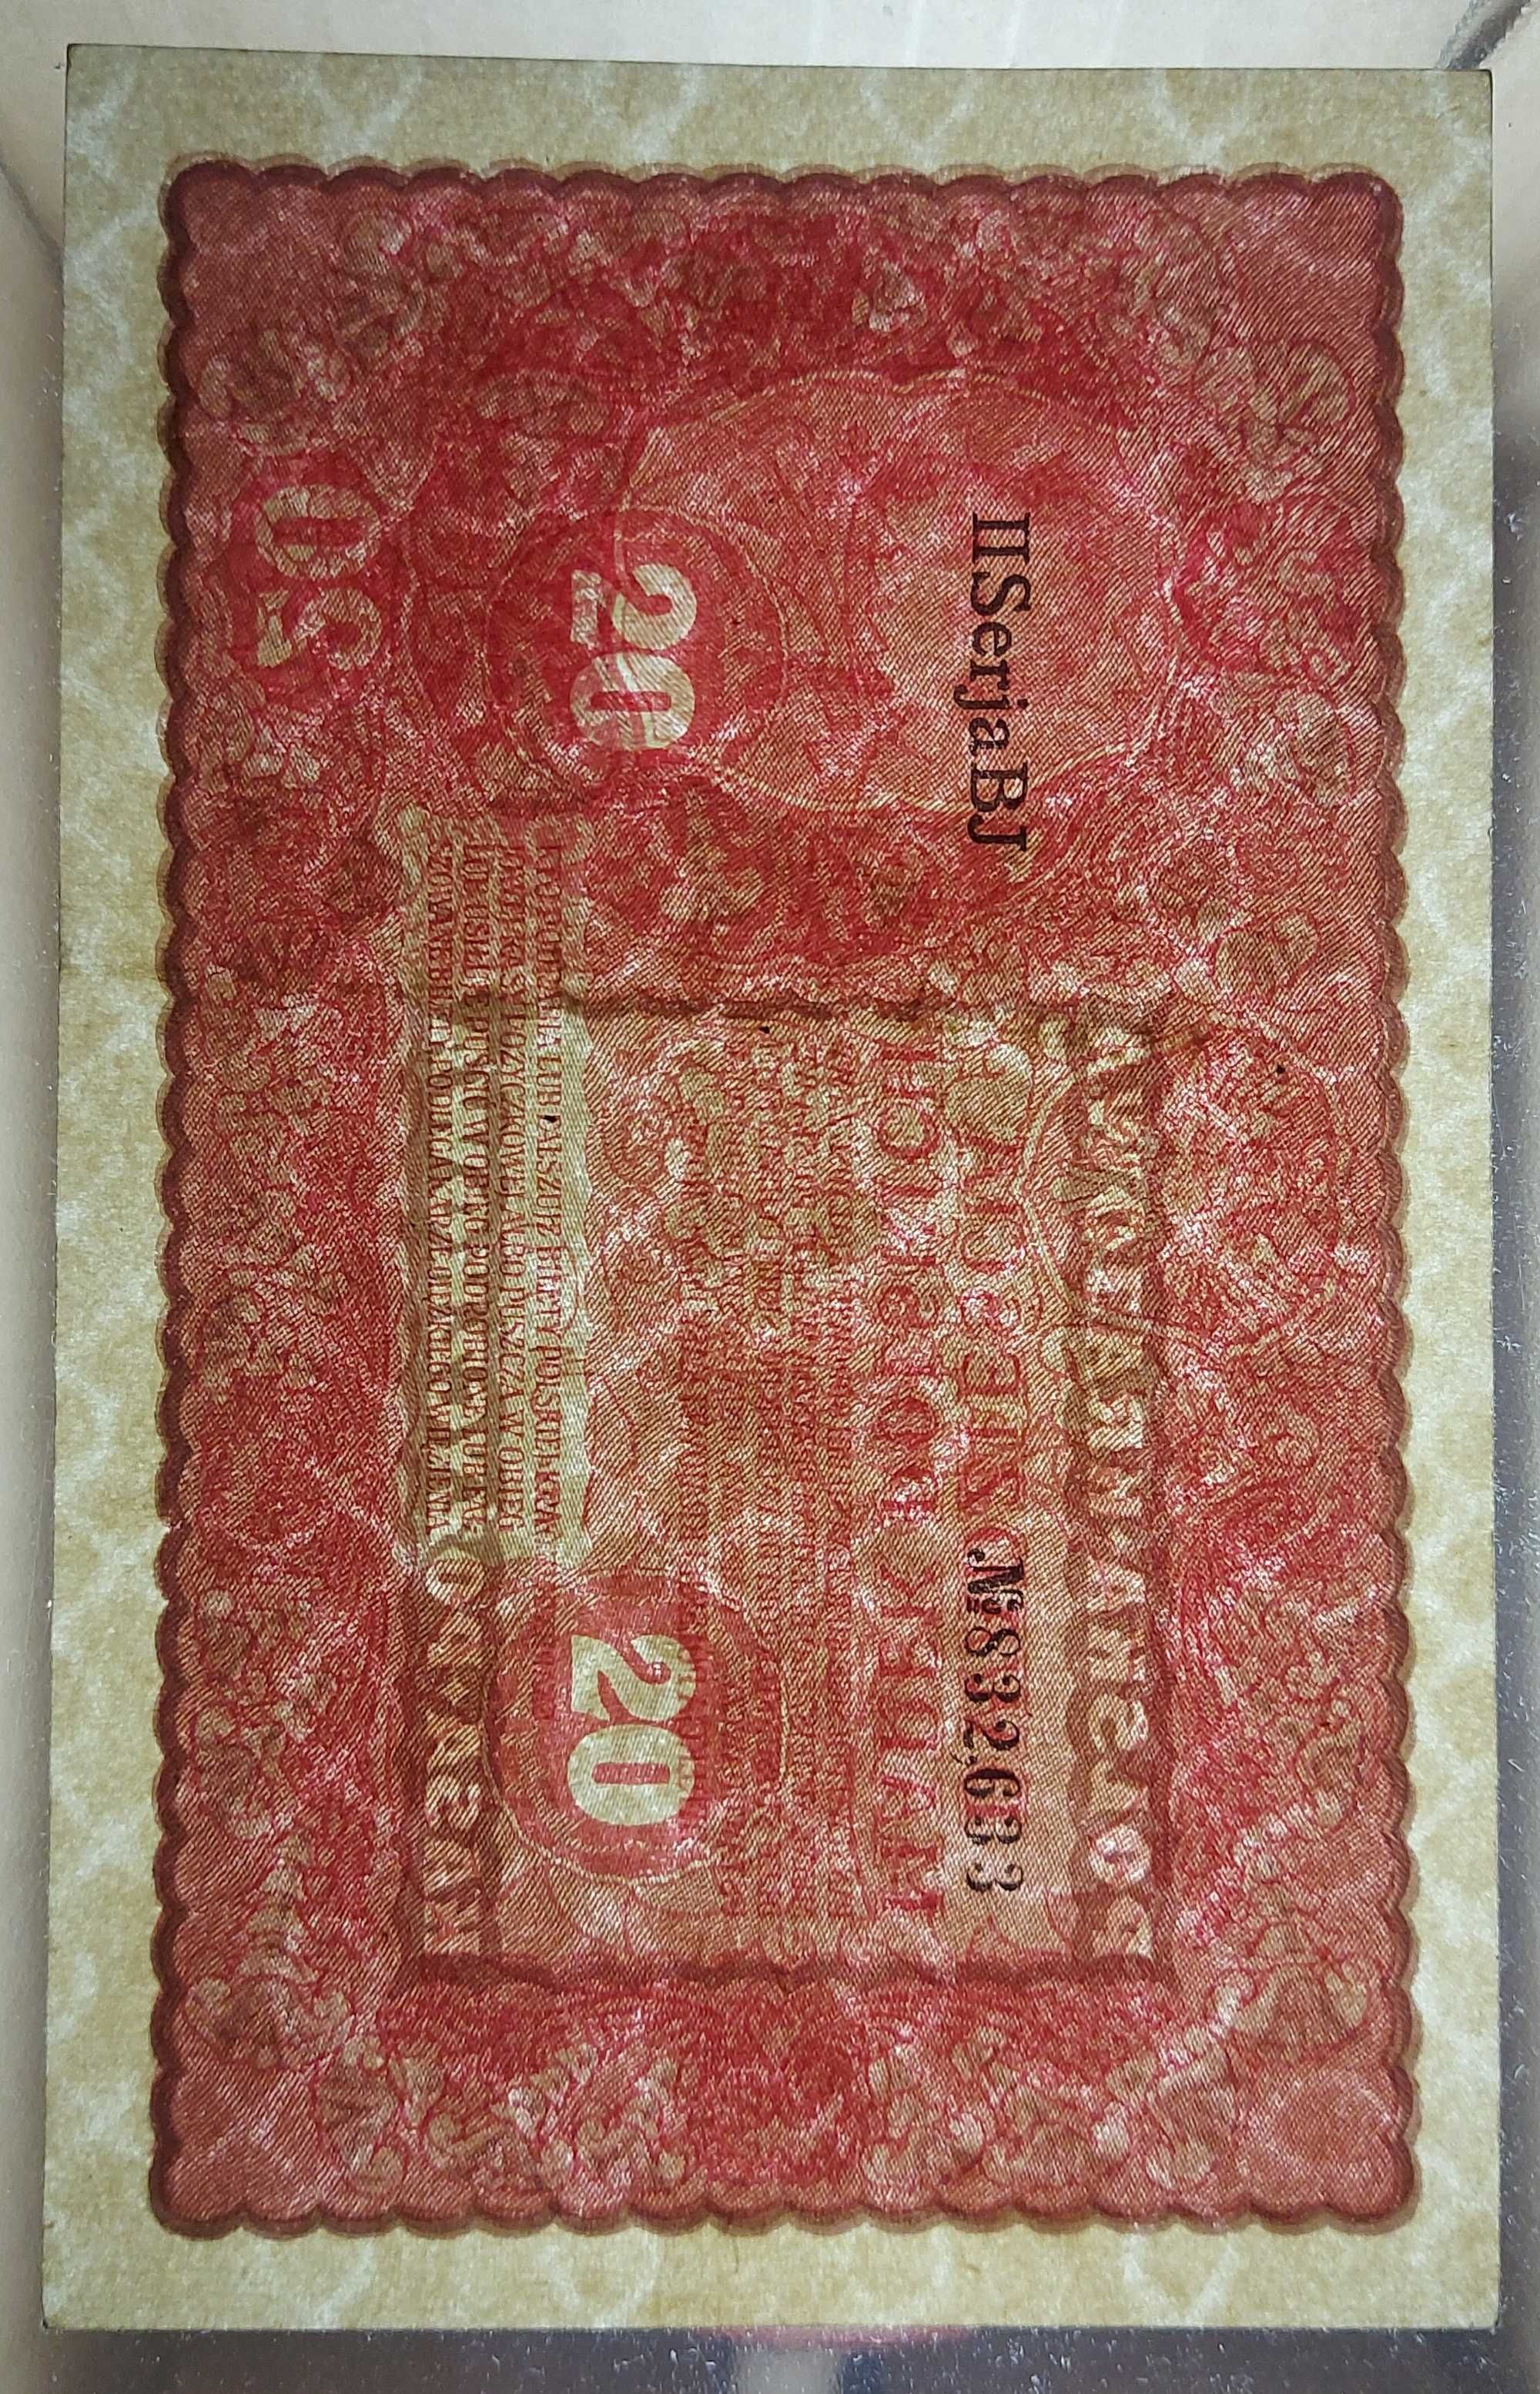 Banknot 20 marek polskich emisja z roku 1919.